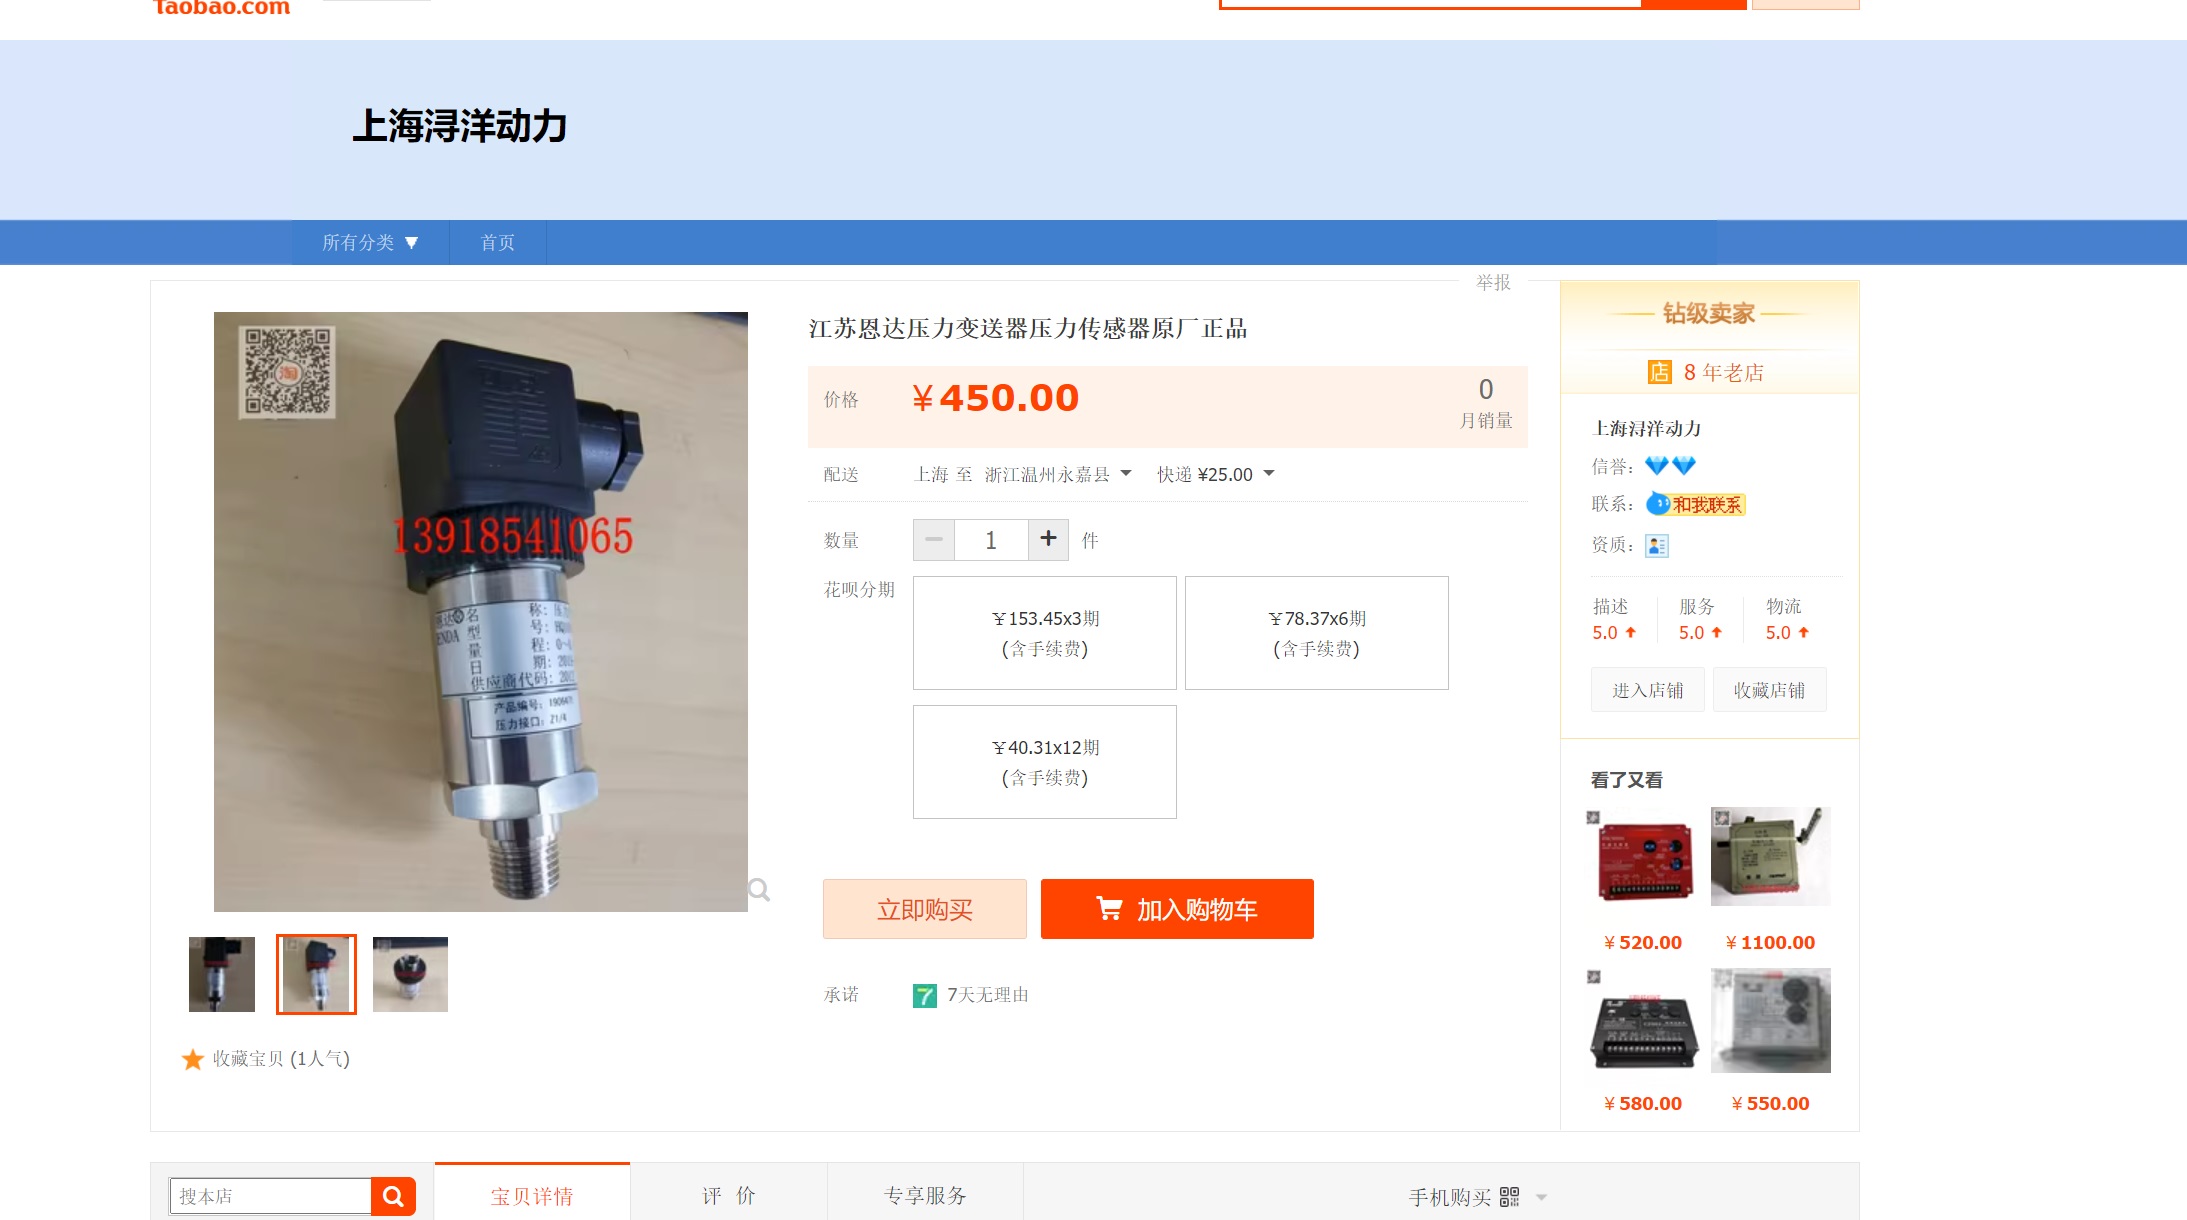 جهاز استشعار الضغط لجهاز إرسال الضغط من Jiangsu Enda منتج المصنع الأصلي HQ1002